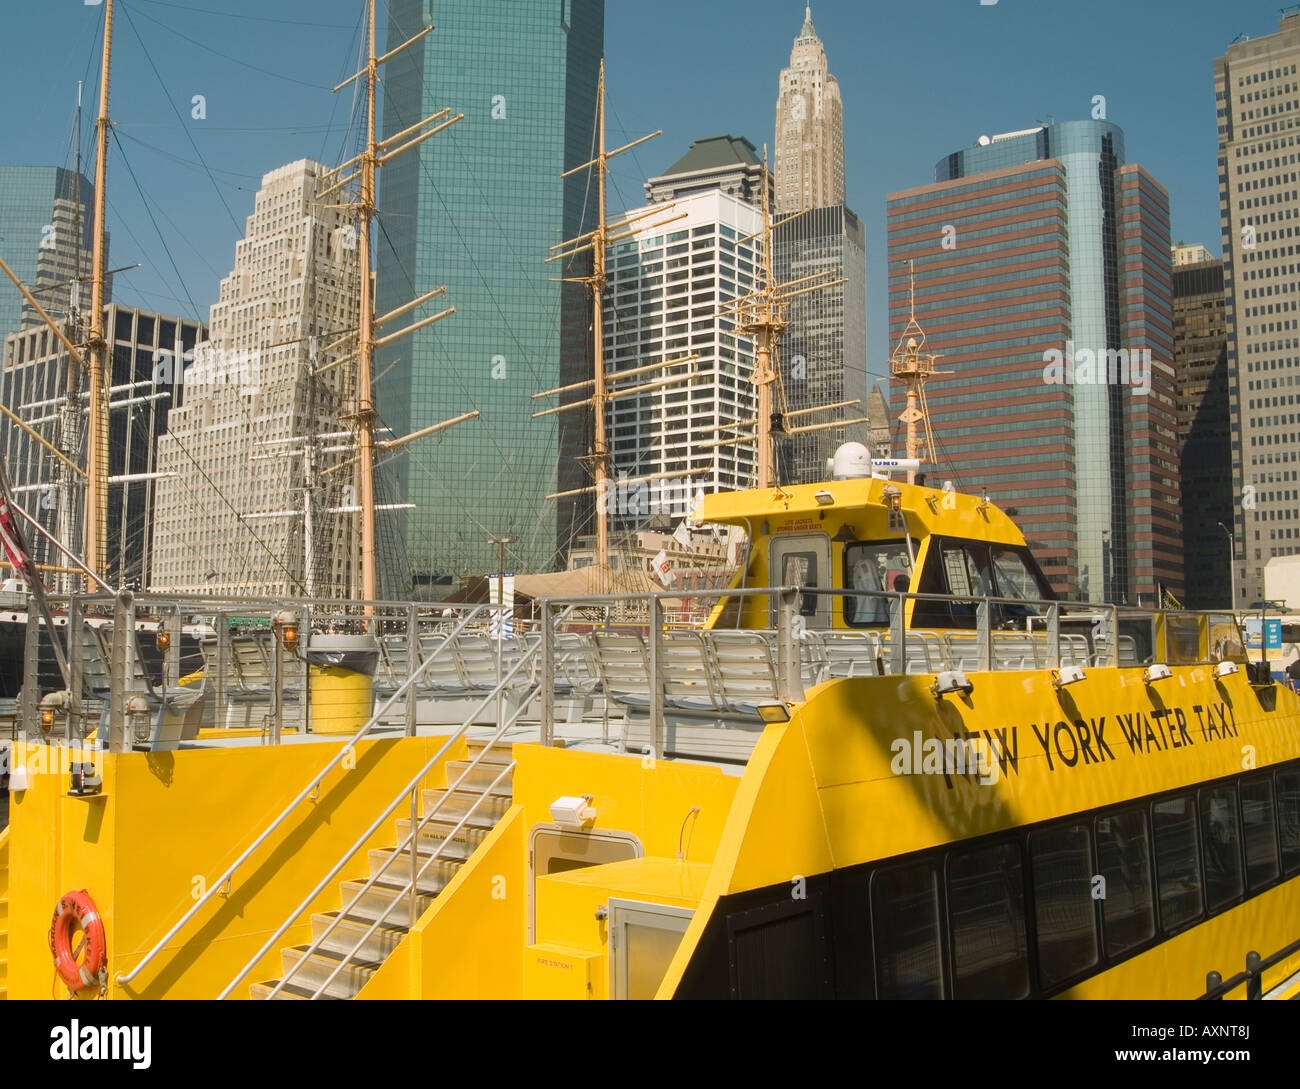 Un taxi de l'eau jaune vif, amarré dans le port de South Street Seaport de New York USA Banque D'Images